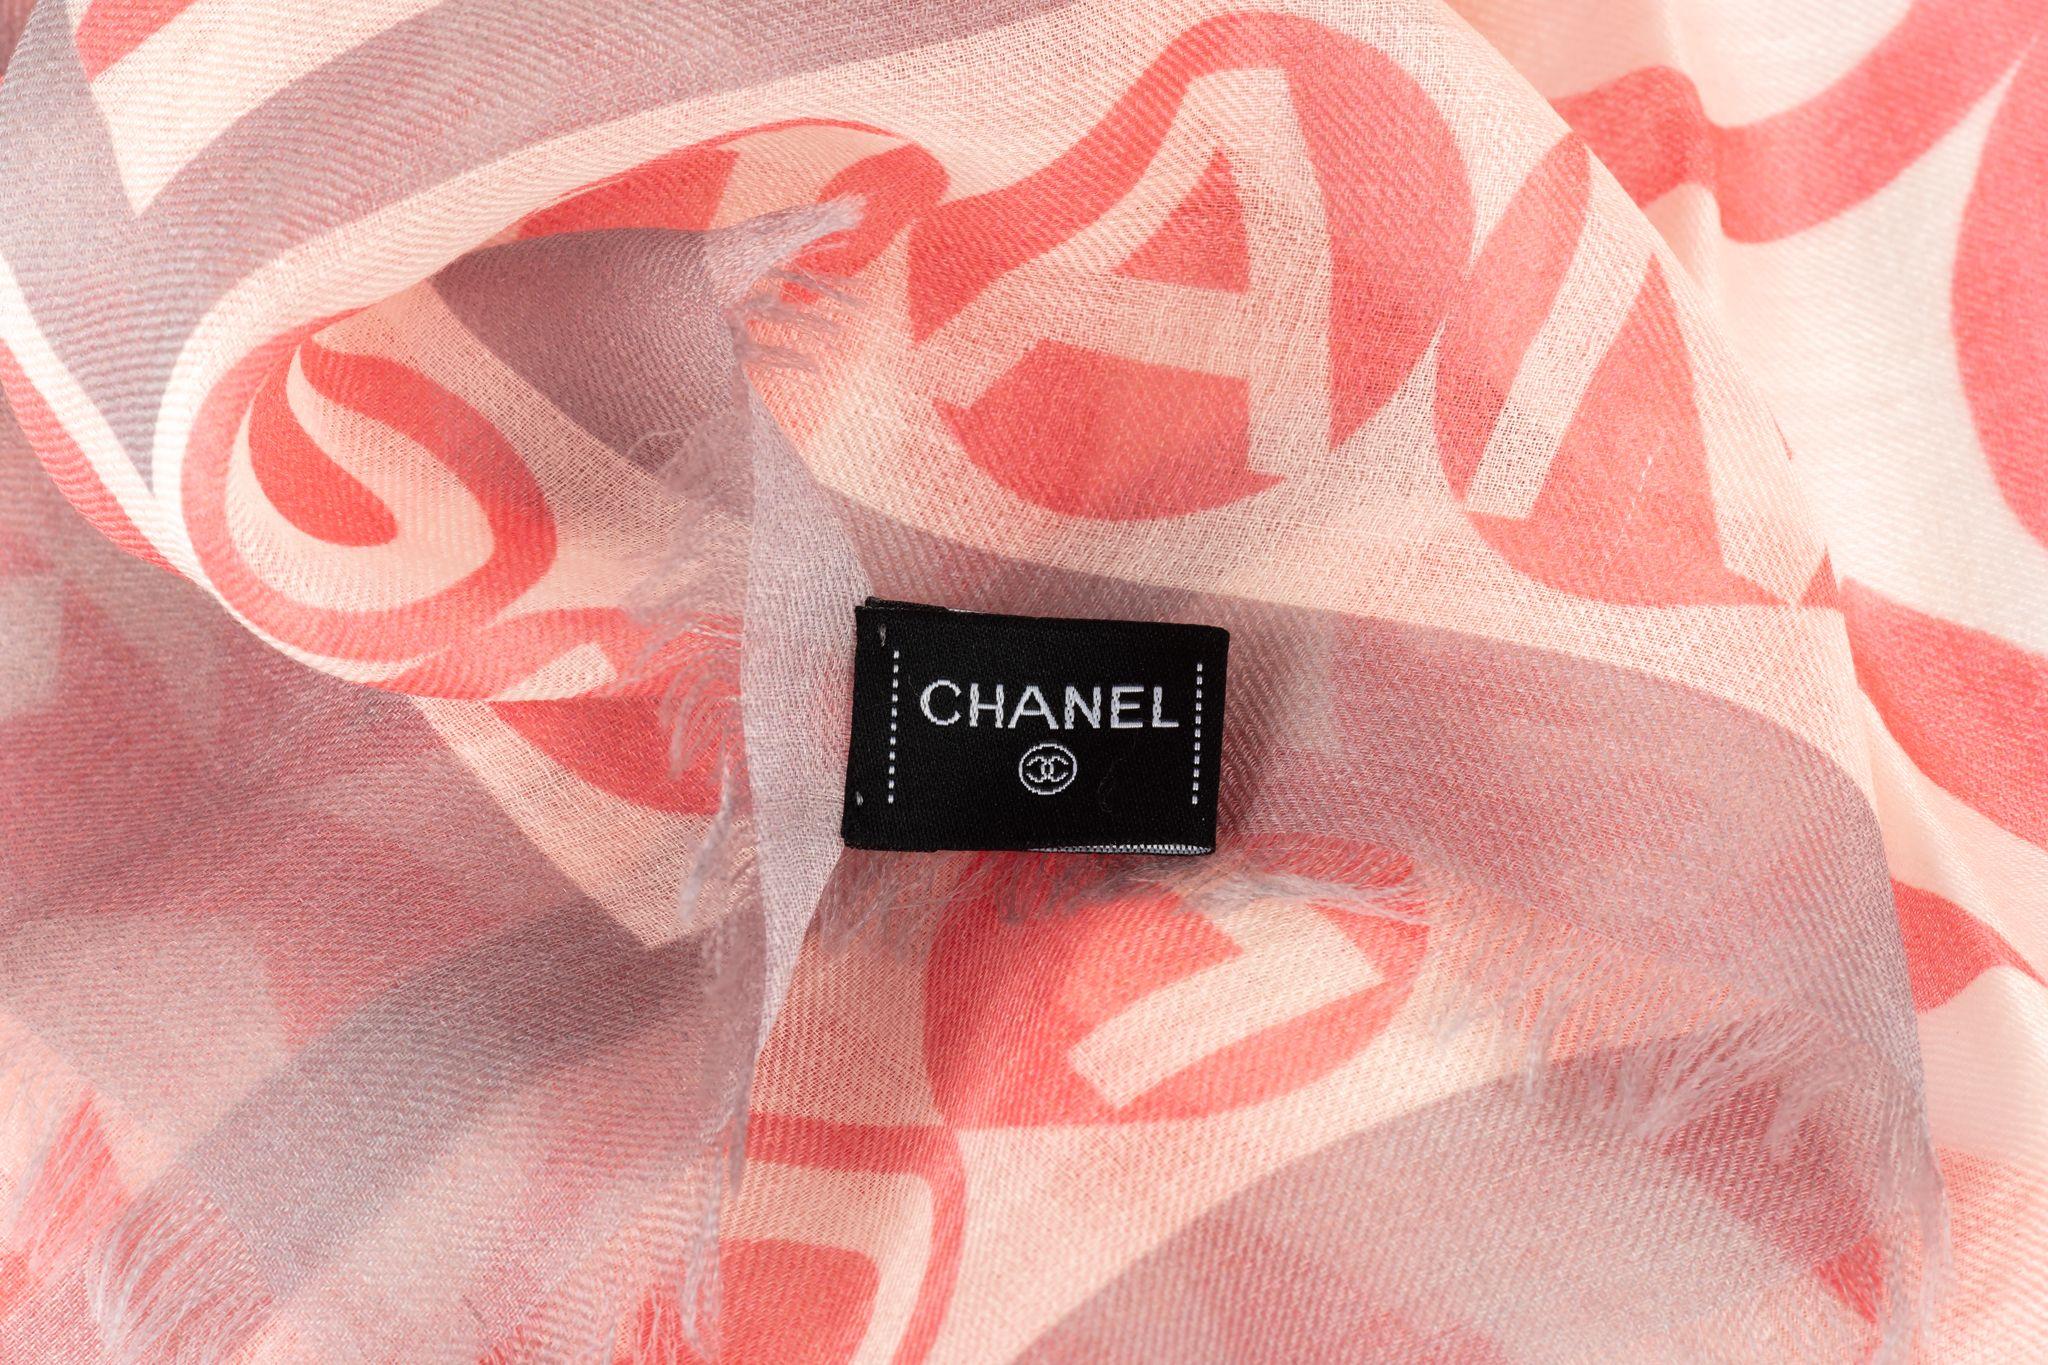 Chanel neuer Kaschmirschal mit mehreren Schriftzügen. Kombination aus Rosa, Grau und Weiß. Pflegeetikett angebracht.
